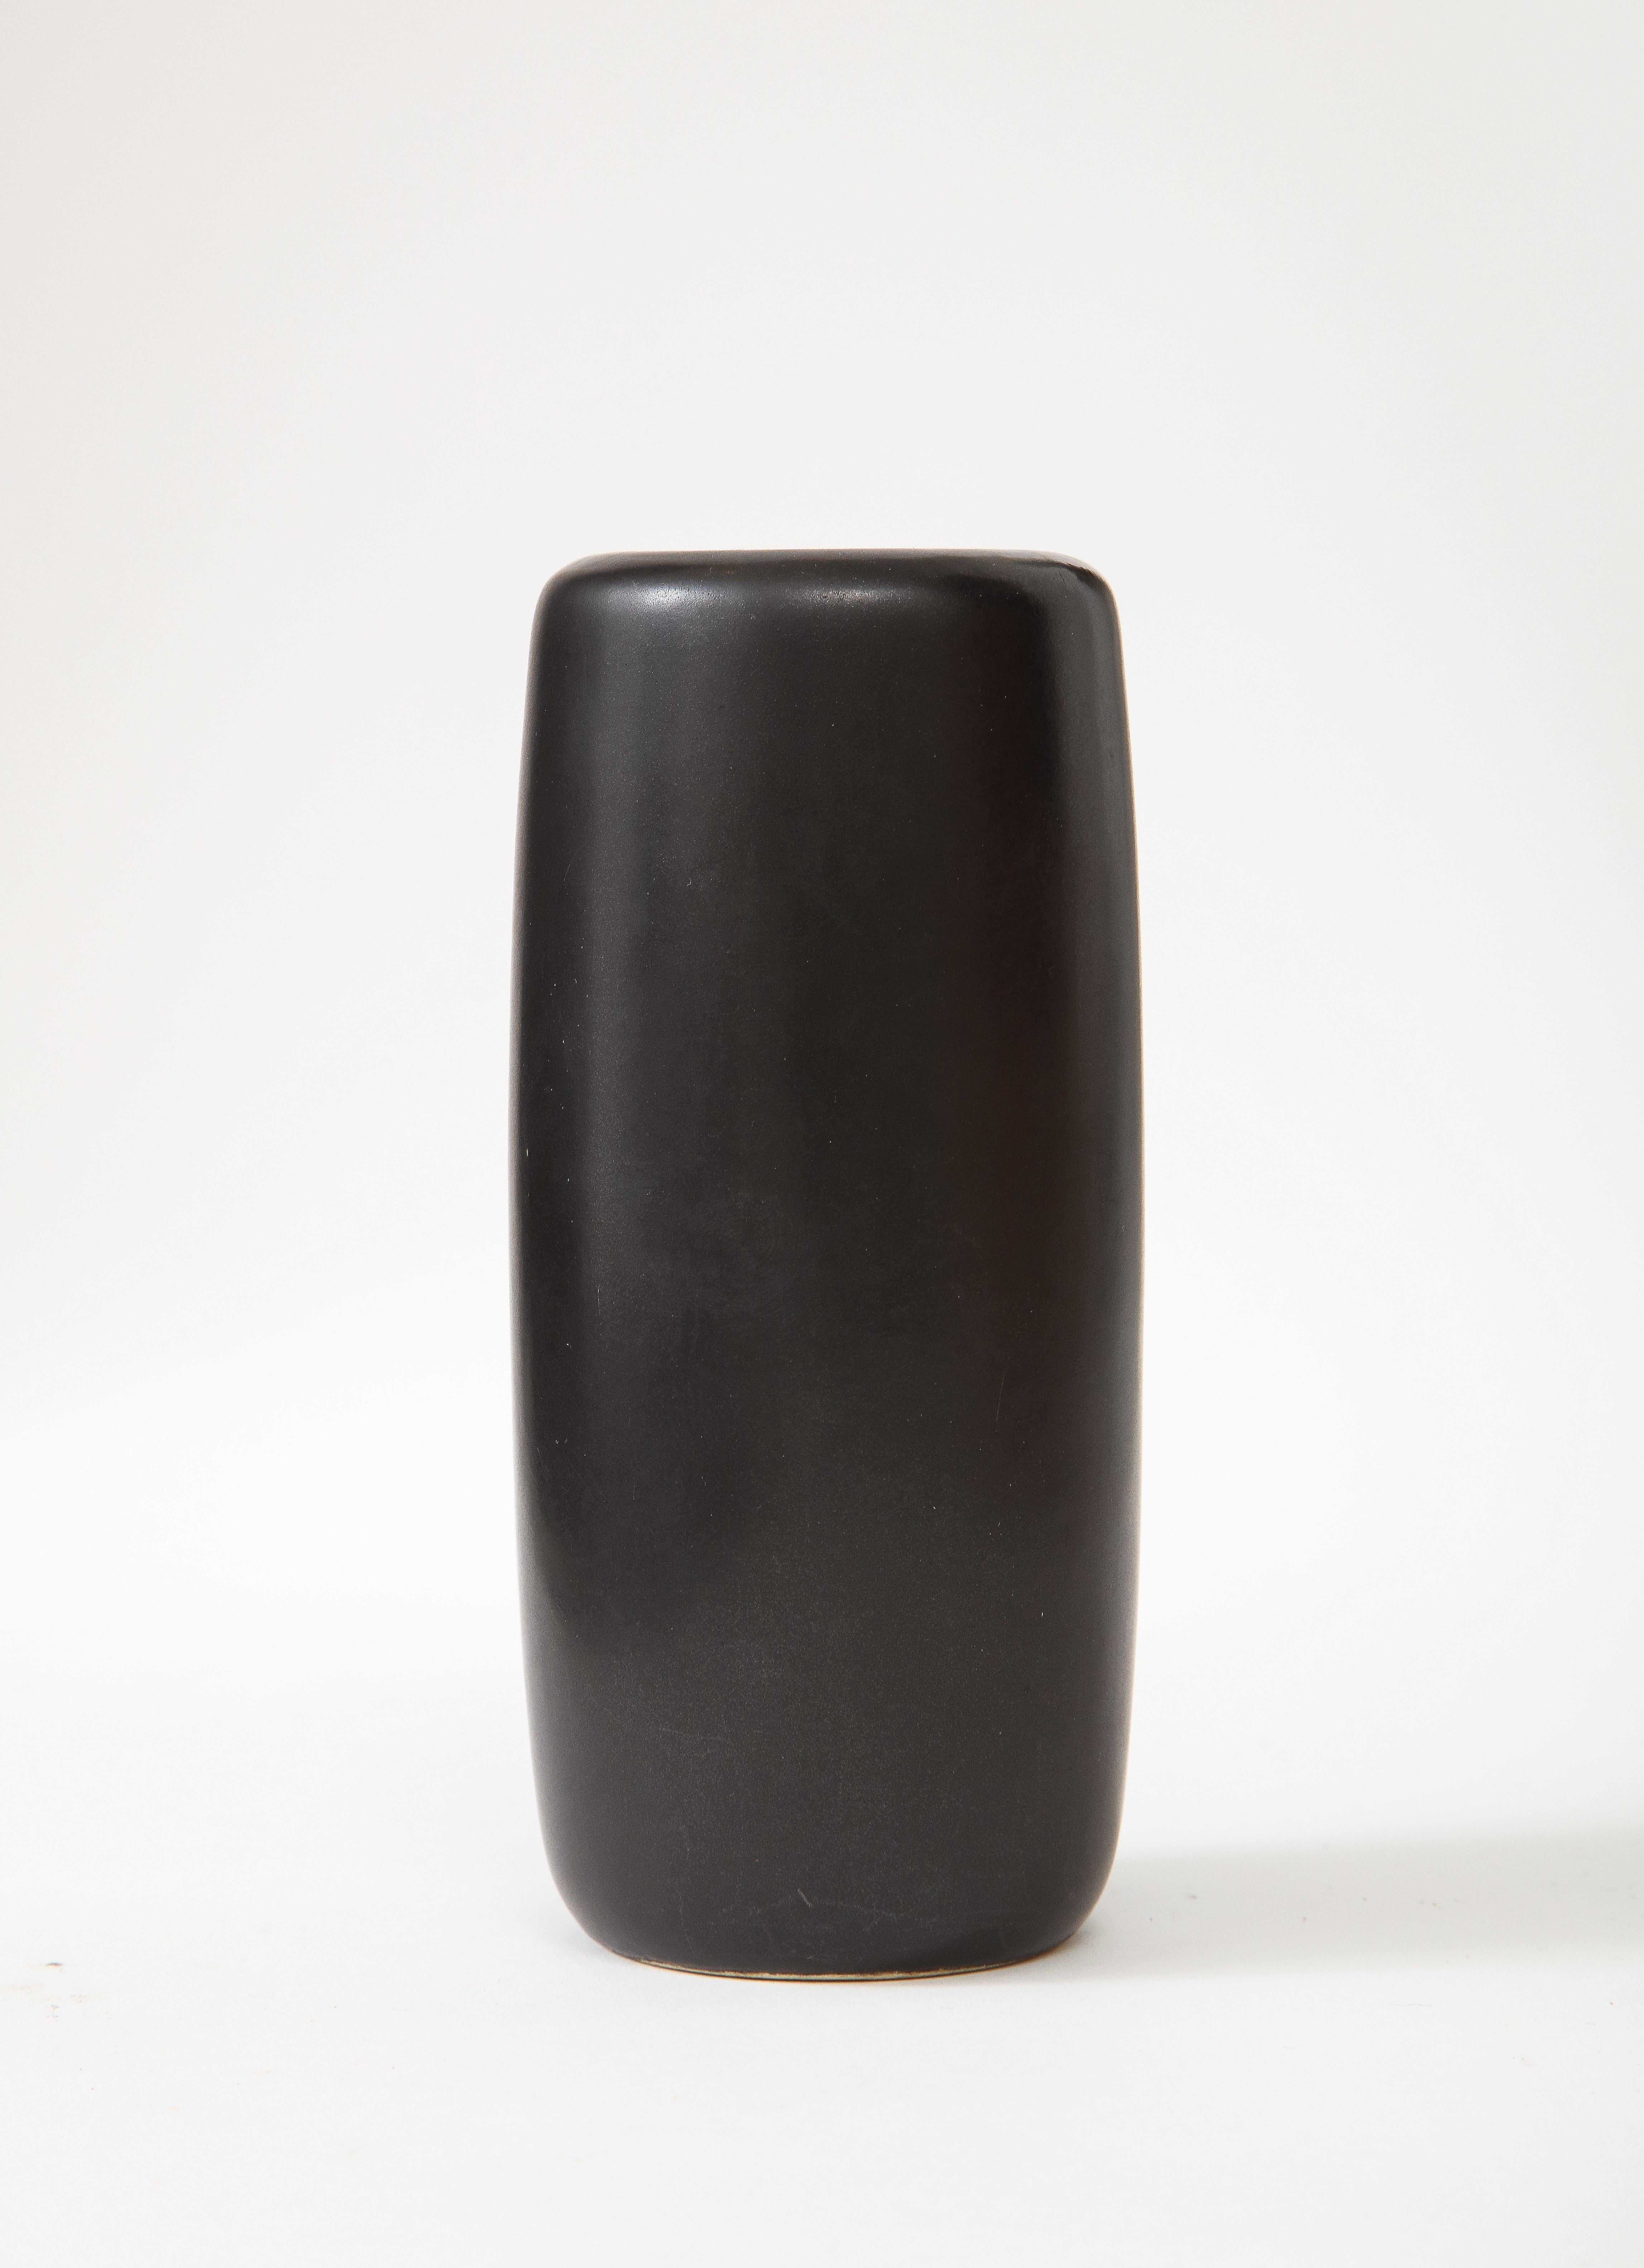 J. B. Matte Black Modern Vase, Signed, c. 1960 For Sale 1